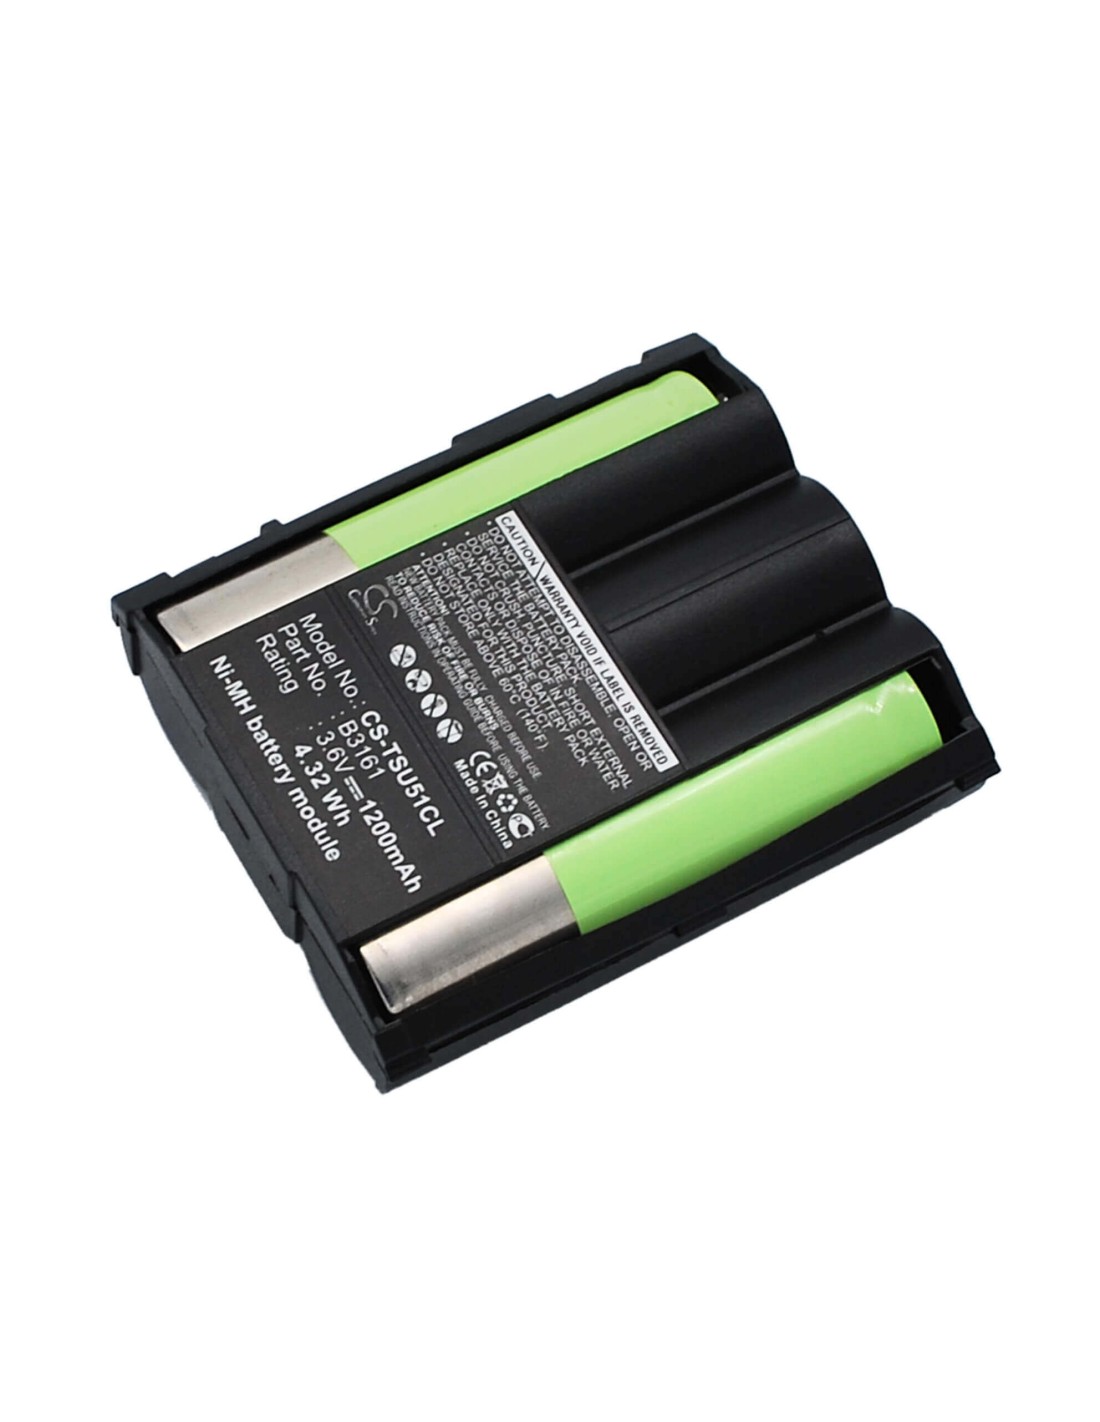 Battery for Bang & Olufsen, Beocom 5000 3.6V, 1200mAh - 4.32Wh